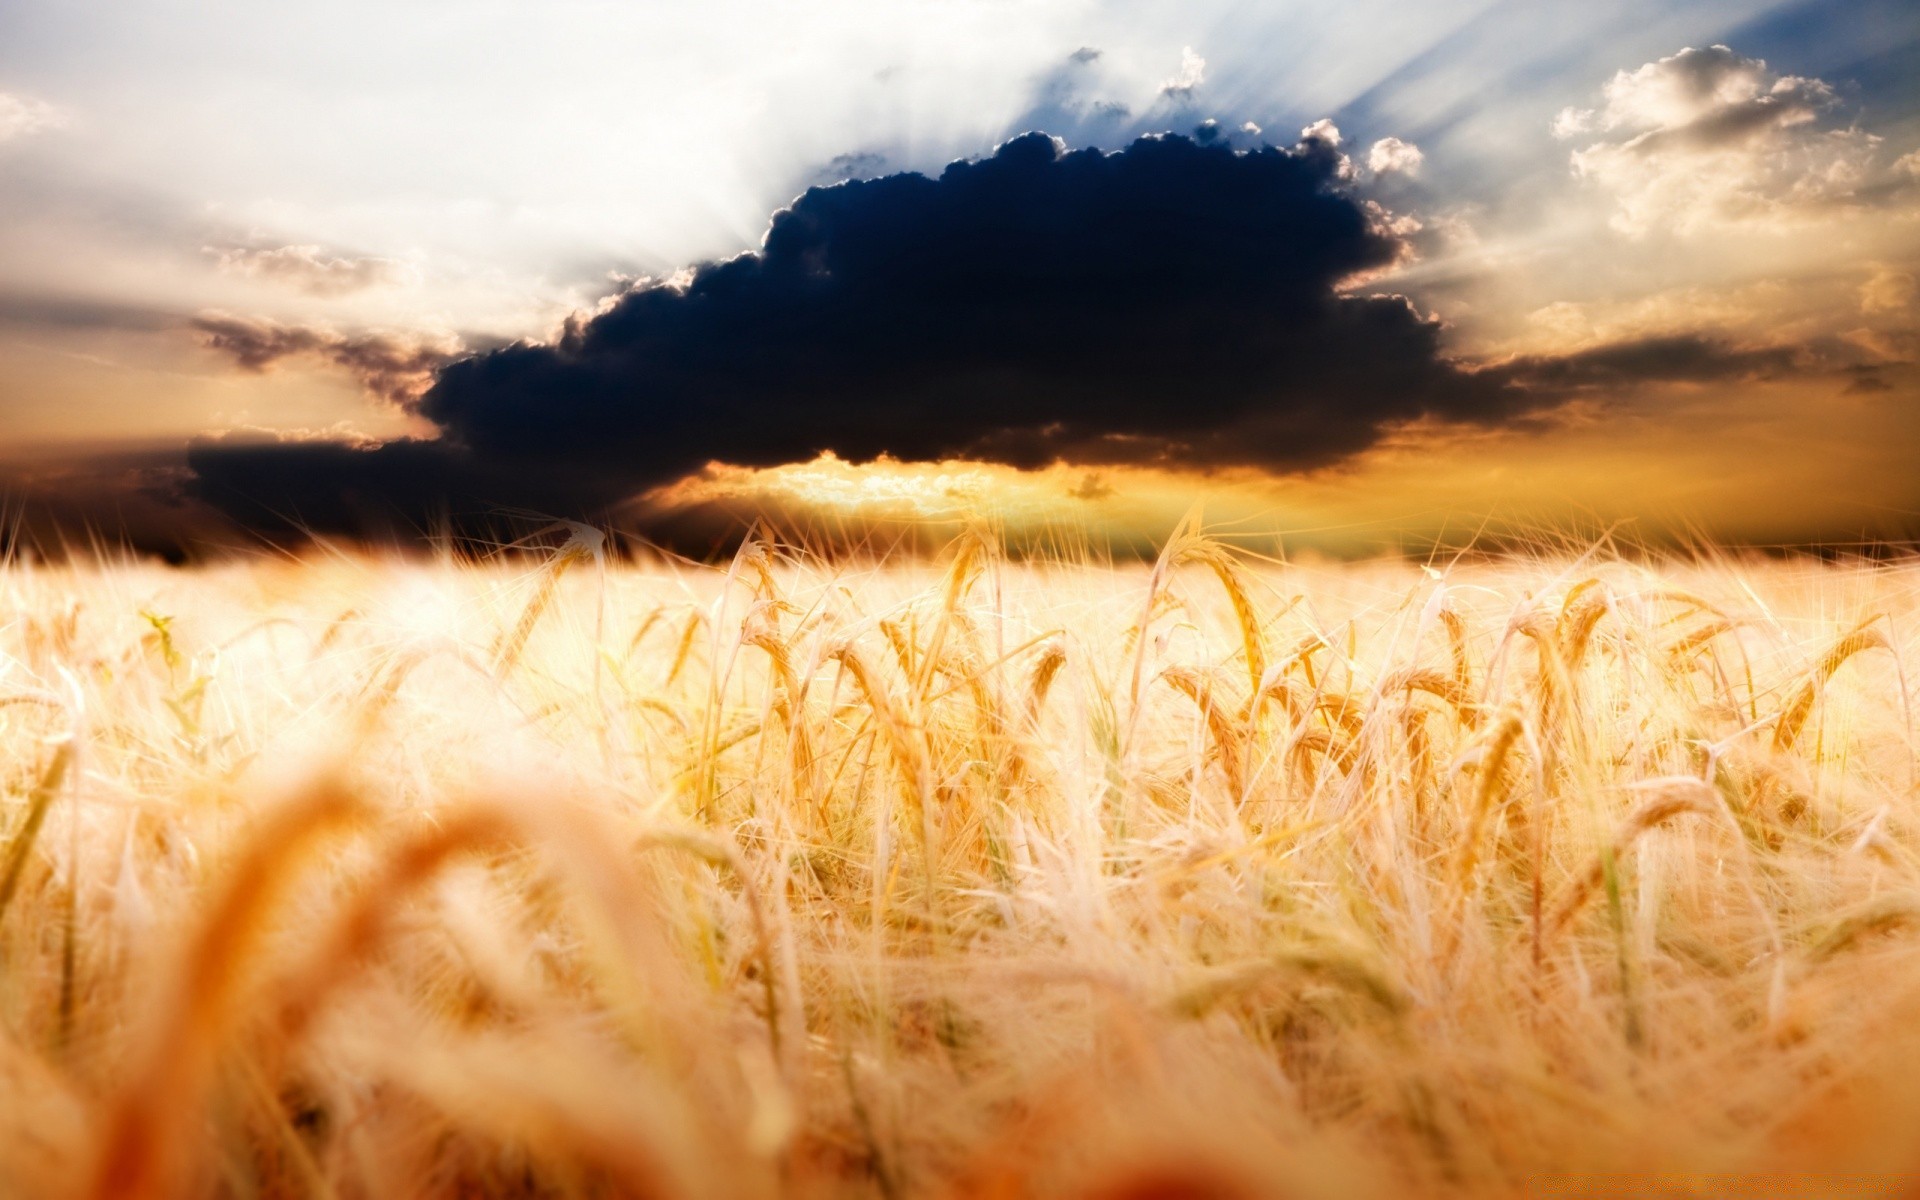 verano cereales naturaleza trigo paisaje rural pasto campo puesta del sol sol paja oro agricultura granja maíz hierba al aire libre buen tiempo cosecha amanecer